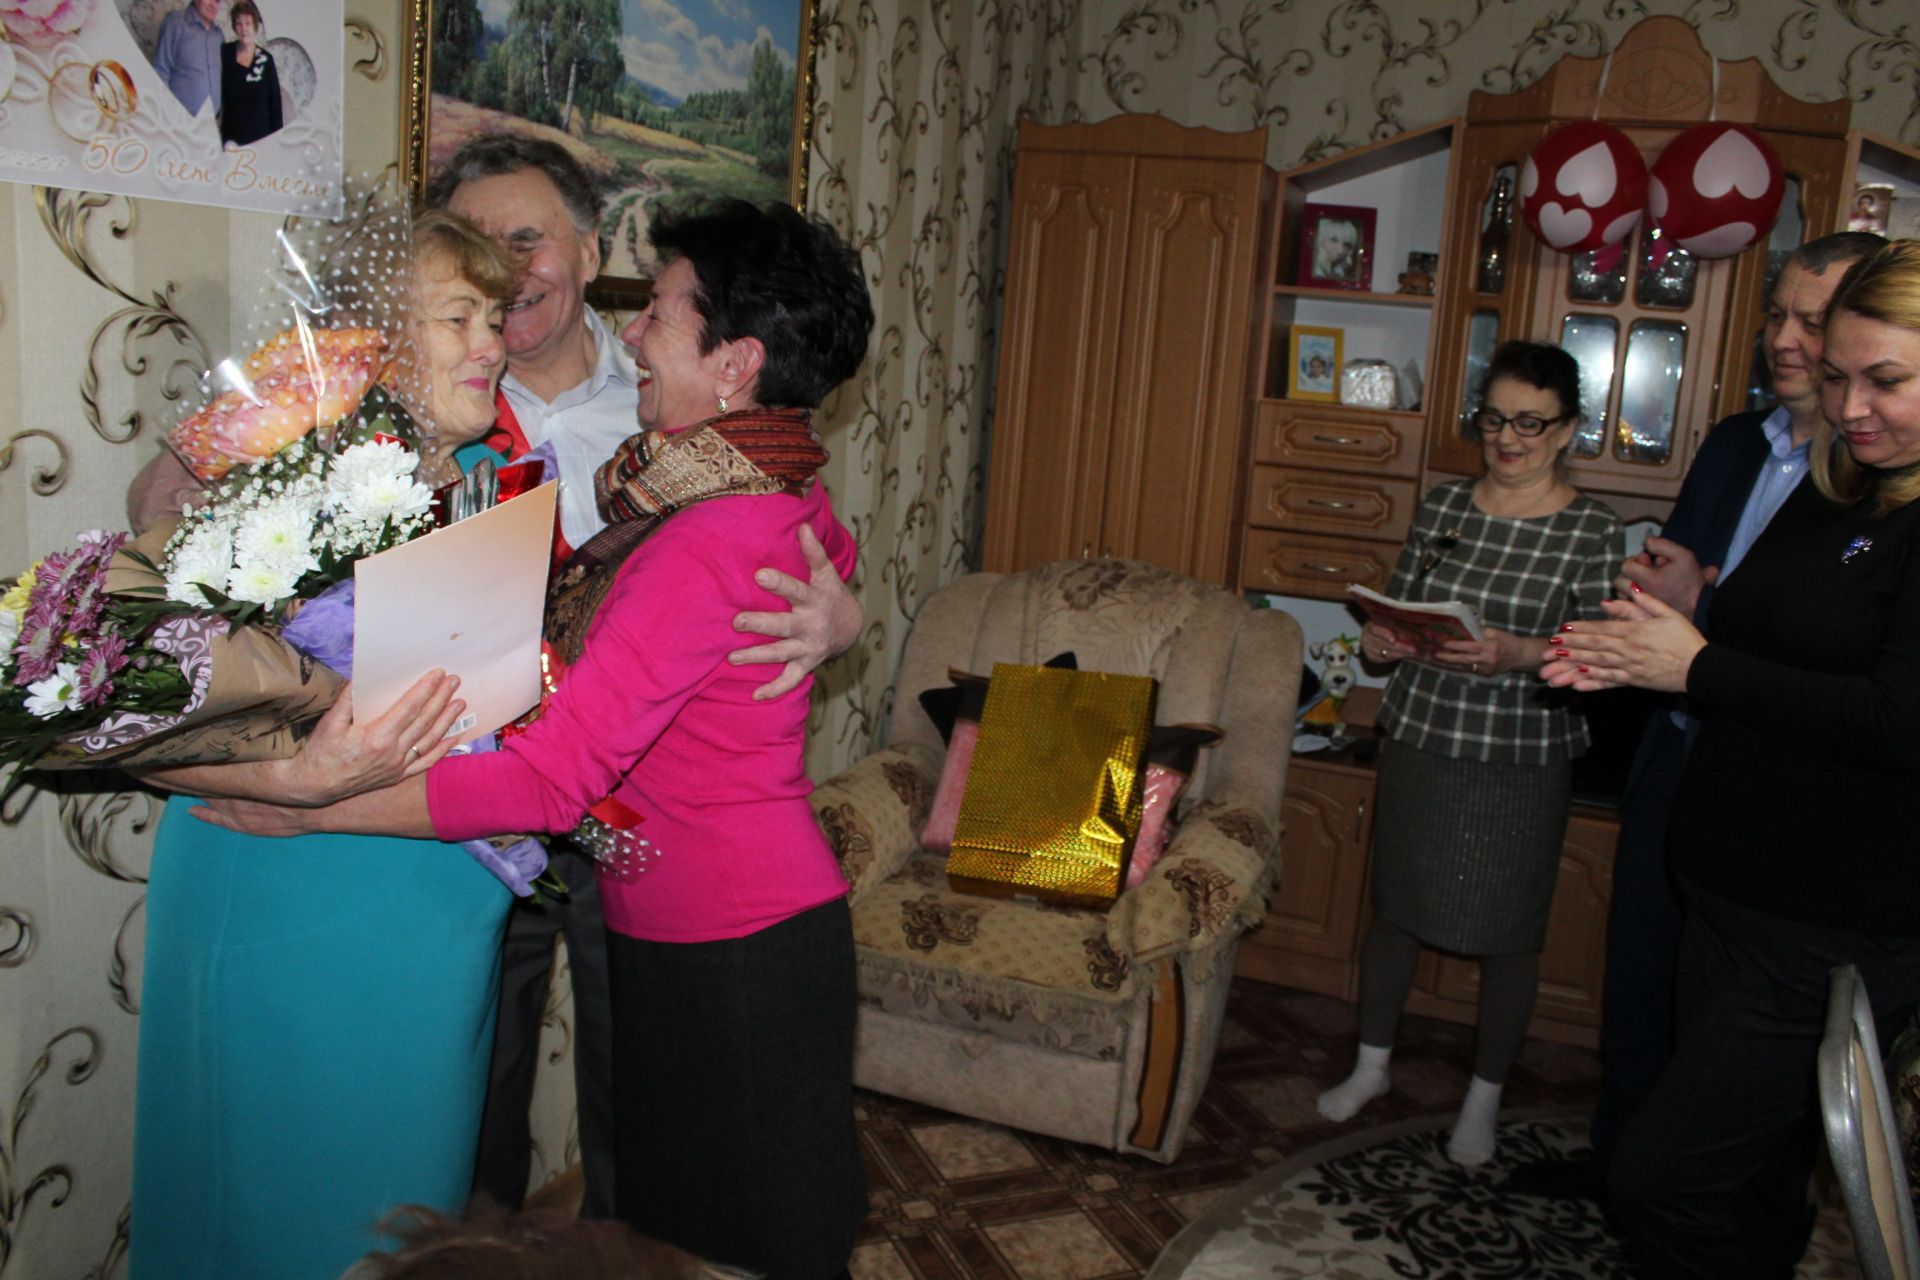 Любовь длиною в 50 лет: супруги Архиповы отпраздновали золотую свадьбу